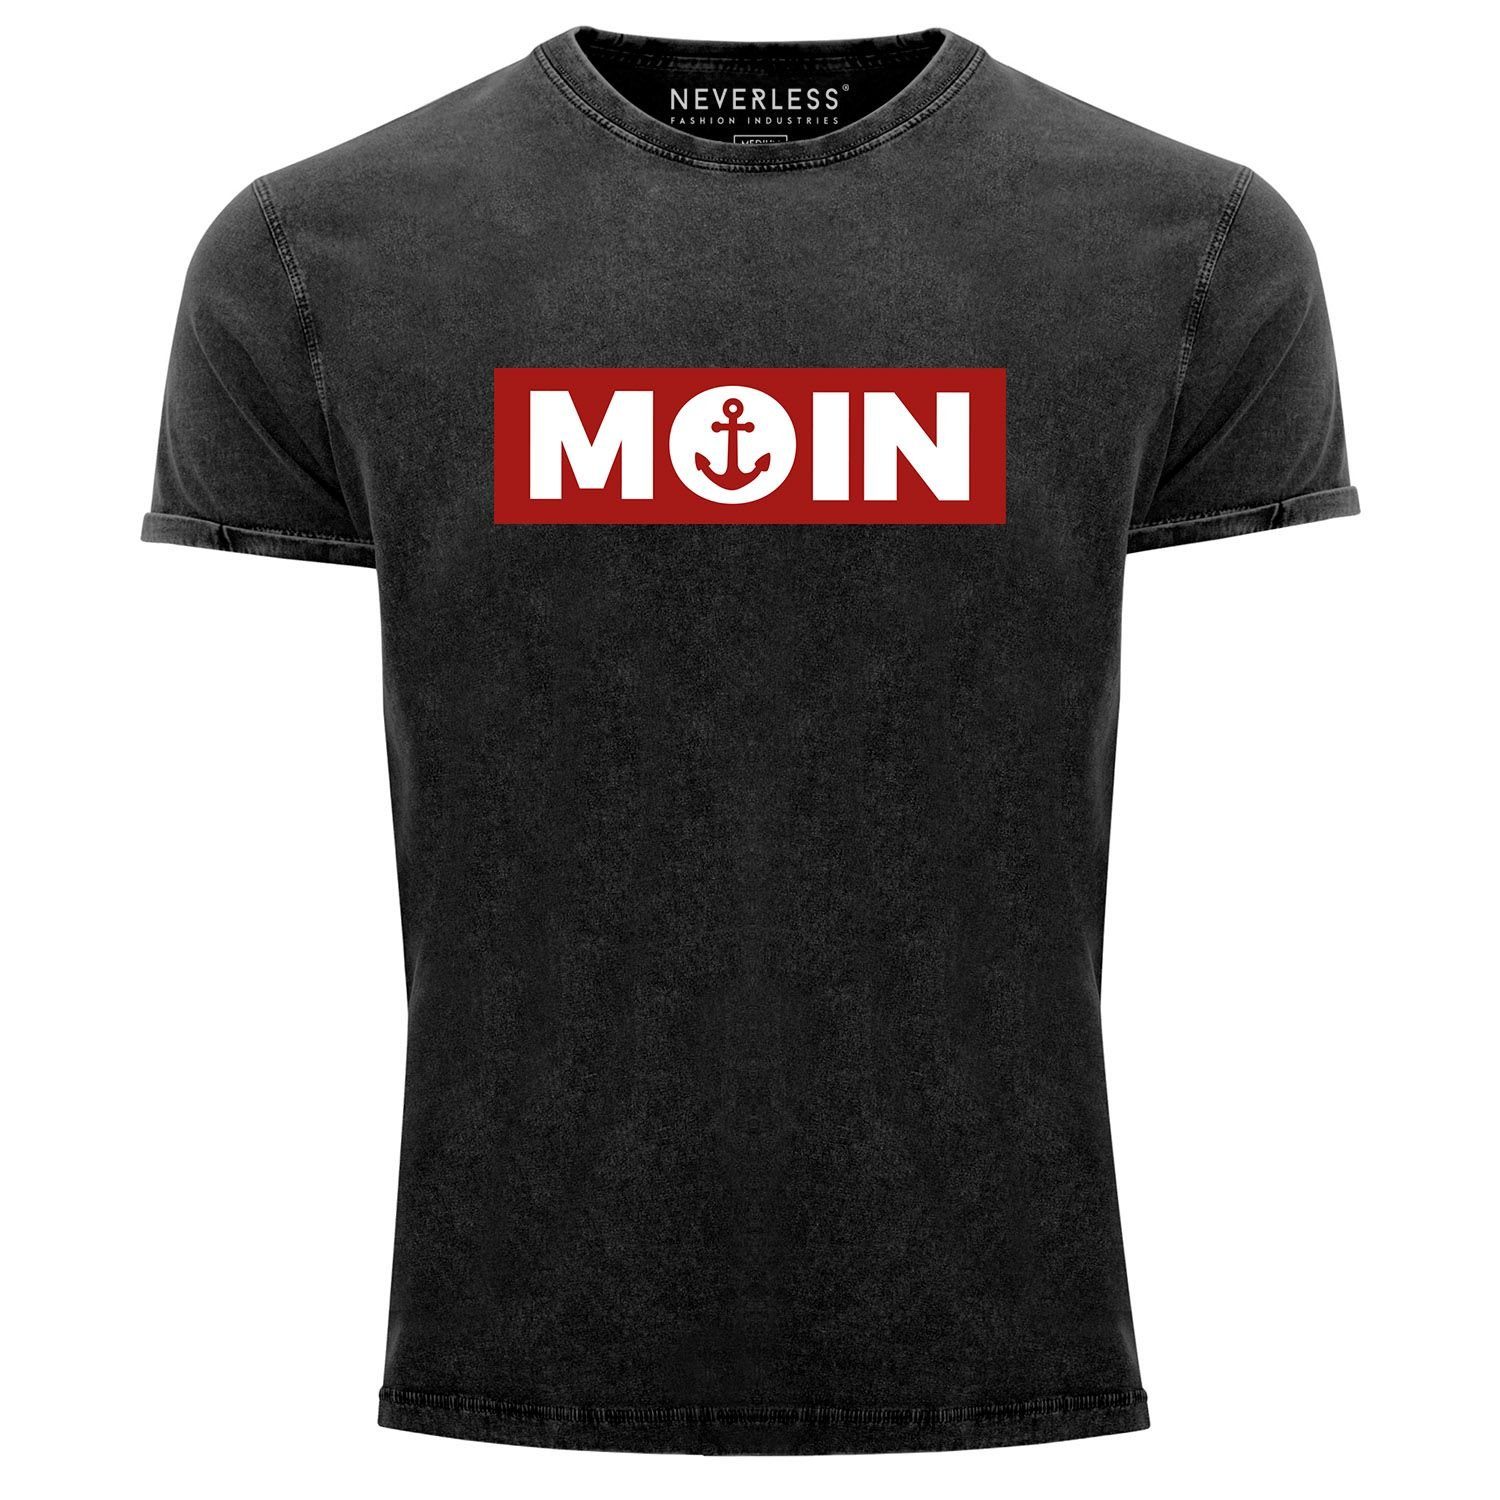 Neverless Print-Shirt Herren Vintage Shirt Moin norddeutsch Morgen Anker Printshirt T-Shirt Aufdruck Used Look Slim Fit Neverless® mit Print